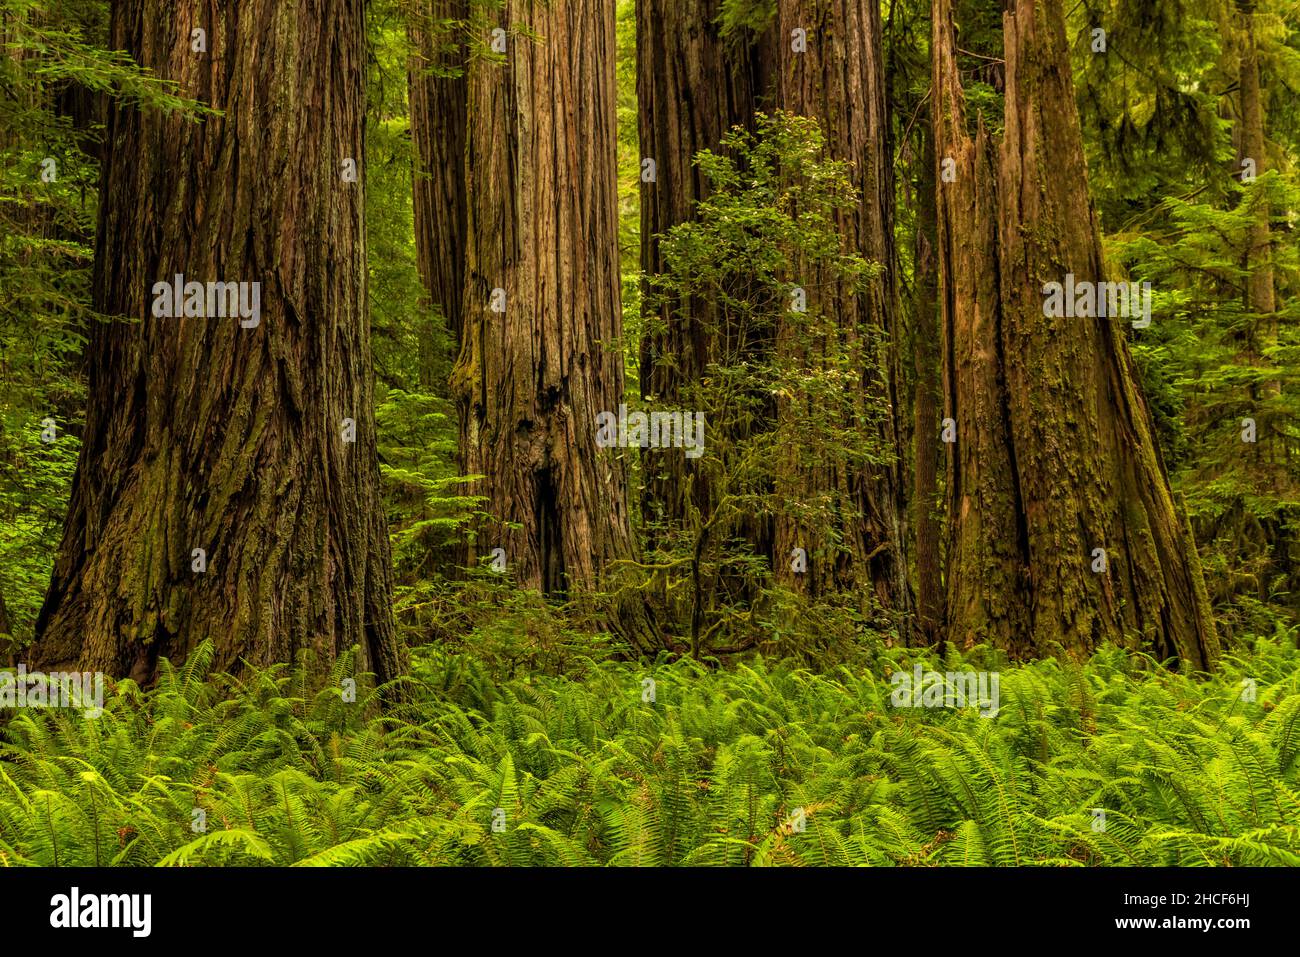 Los helechos de espada rodean la base de los árboles de secoya gigantes el Simpson Reed Grove en el Parque Estatal Jedediah Smith Redwoods, Crescent City, California. Foto de stock